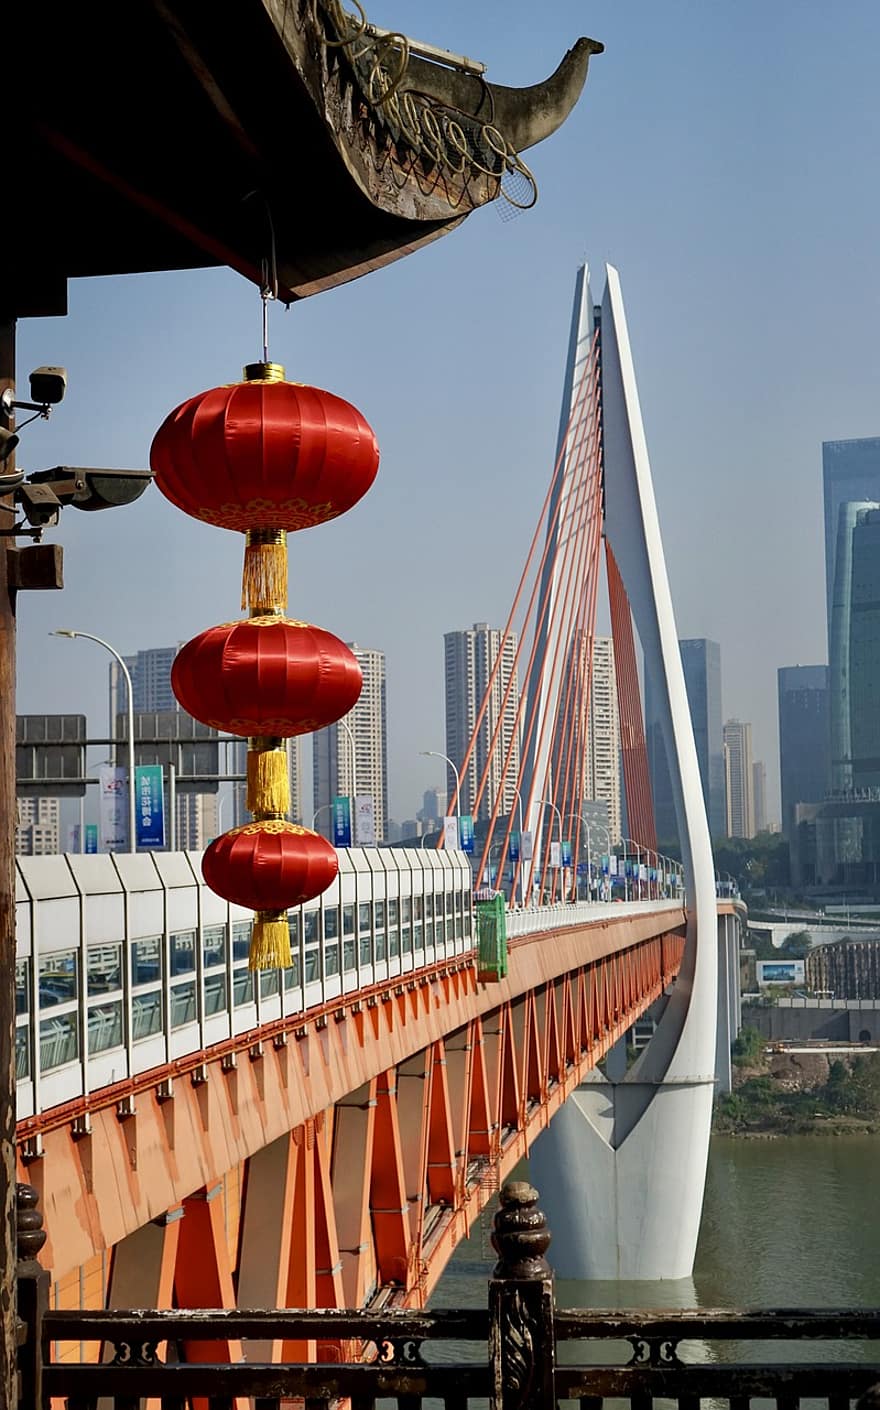 Asien, rejse, turisme, Qiansimen bro, berømte sted, arkitektur, bro, bybilledet, transportmidler, bygget struktur, skyskraber